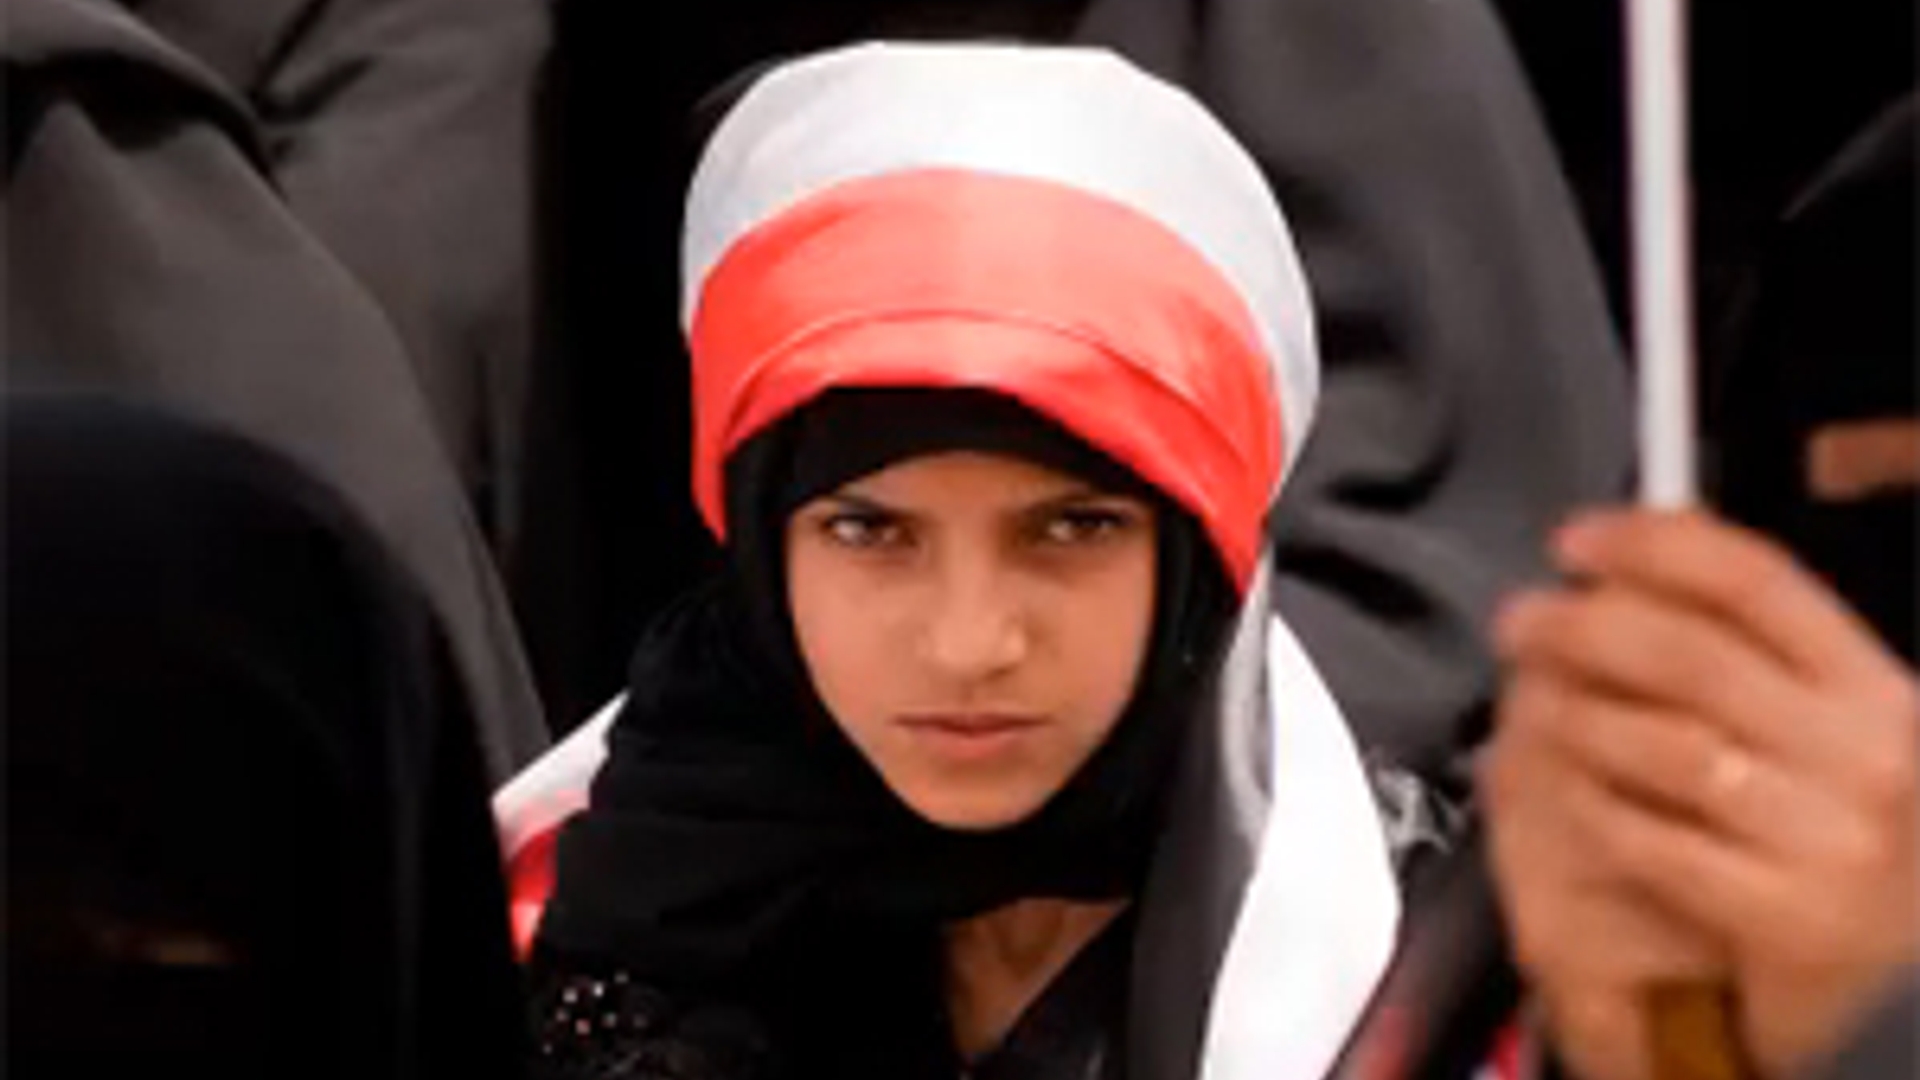 Jemen_girl.jpg